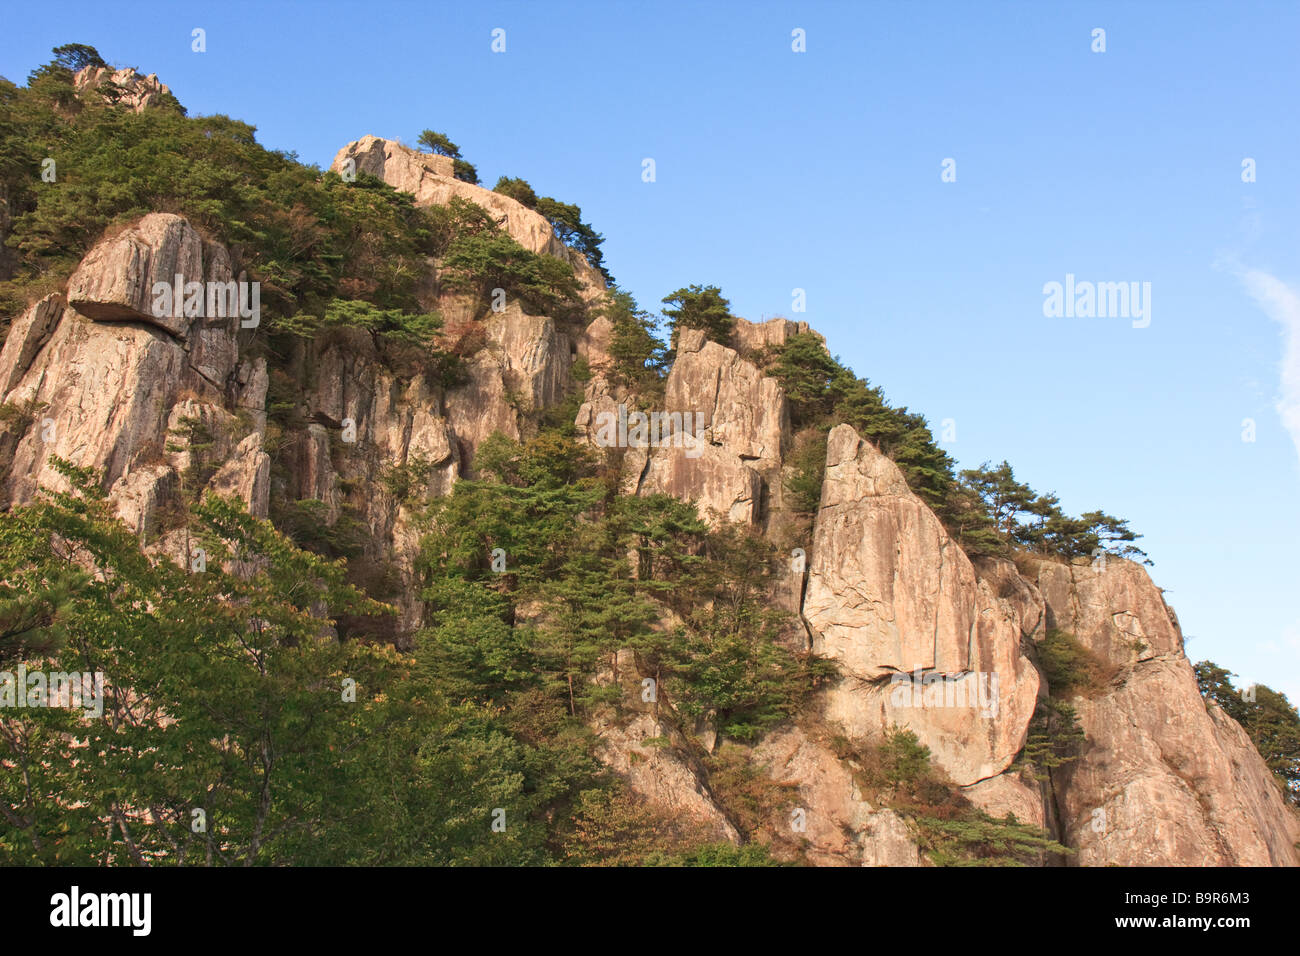 Rocky cliffs of Daedun Mountain, South Korea Stock Photo